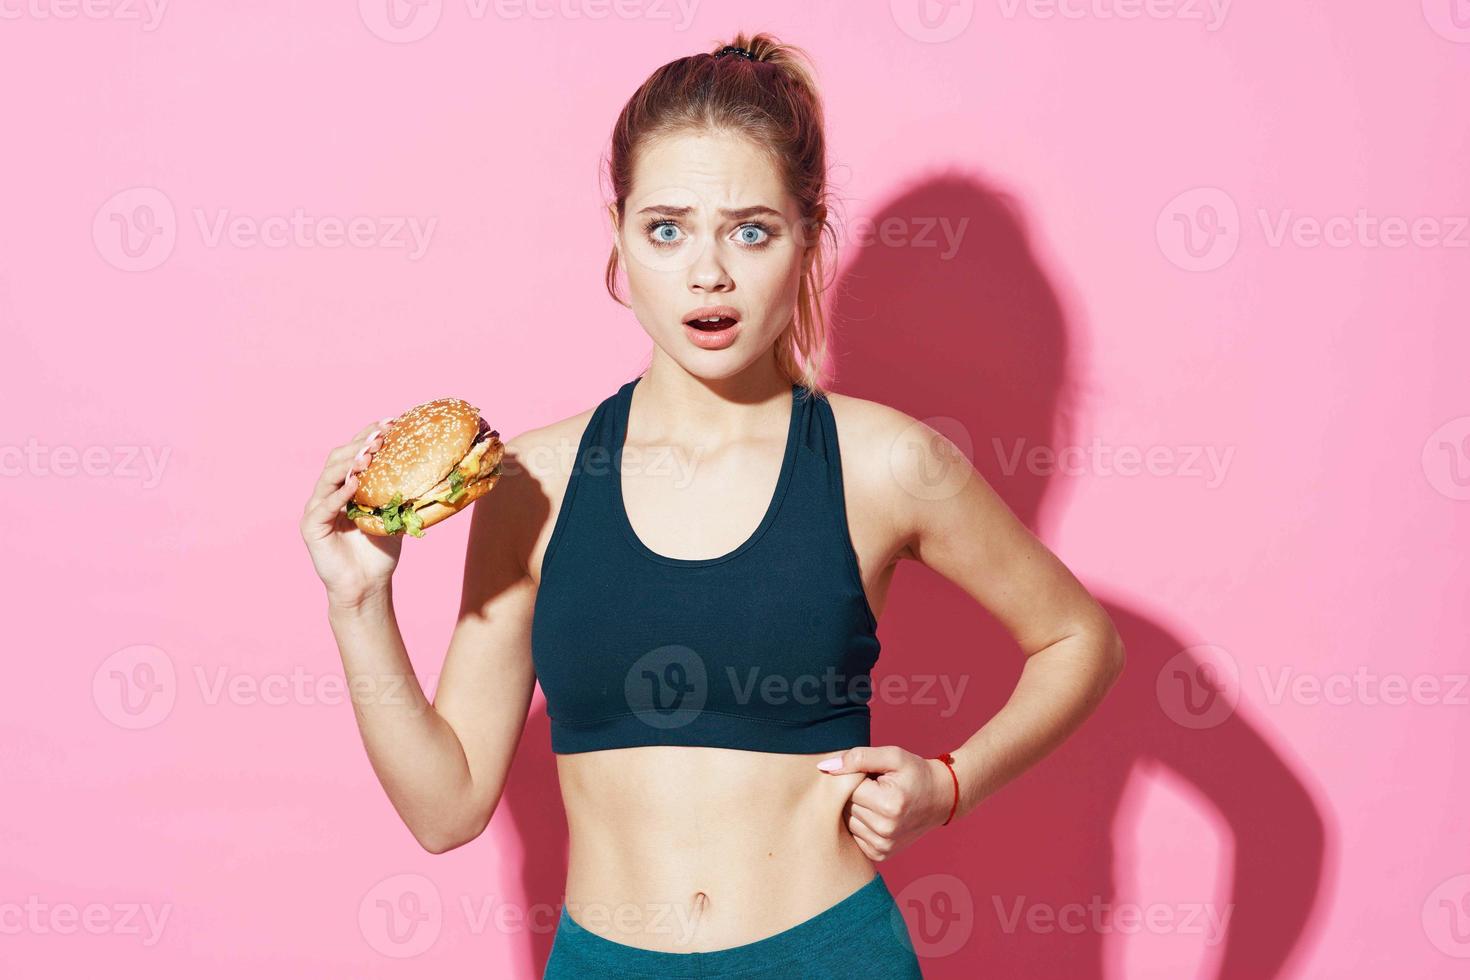 sportief vrouw training Hamburger snel voedsel eetpatroon roze achtergrond foto